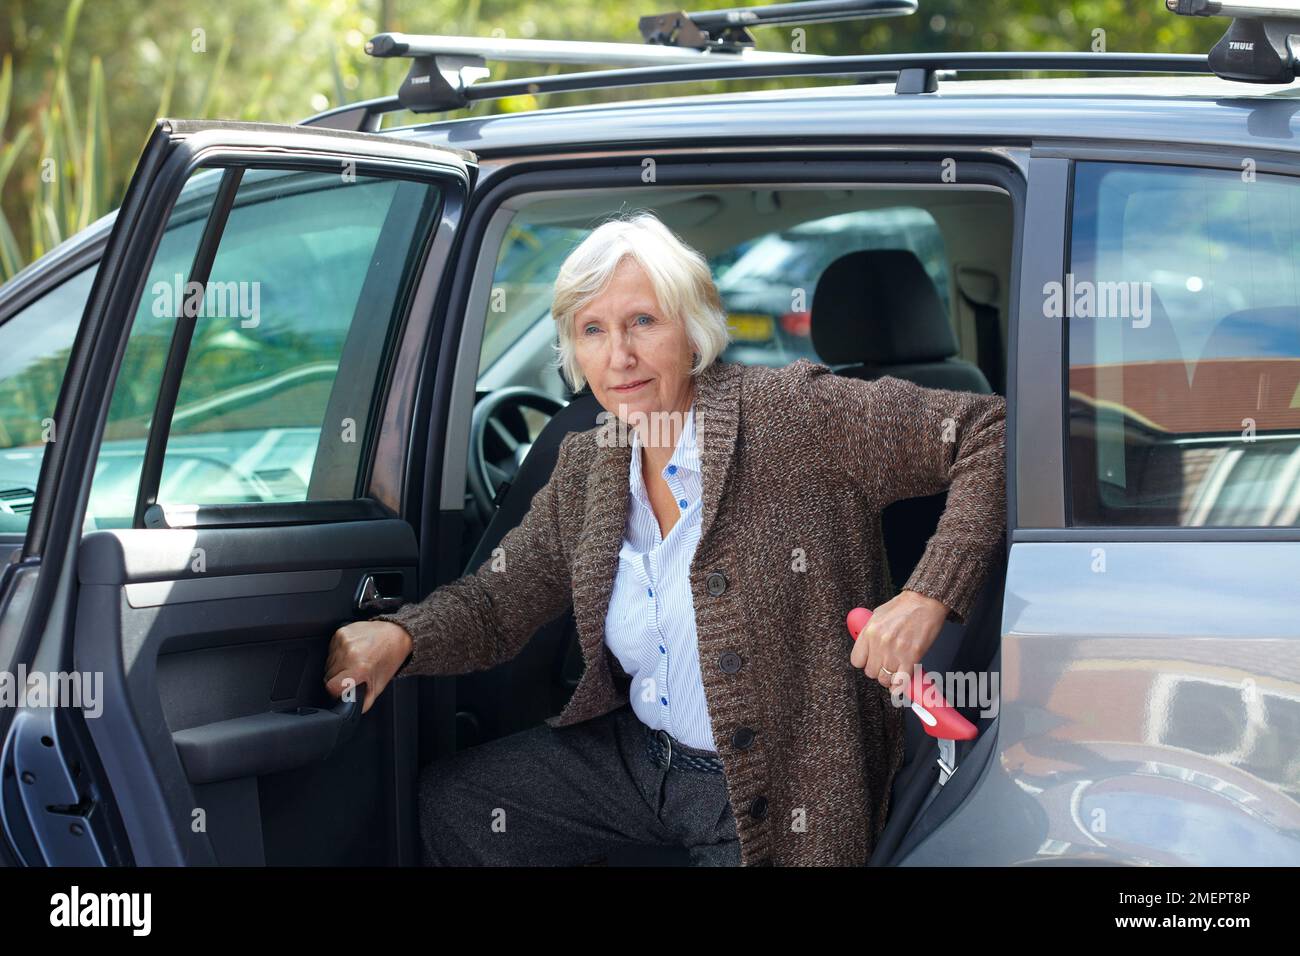 Femme sortant de la voiture, à l'aide d'une poignée portable montée dans le cadre d'une voiture Banque D'Images